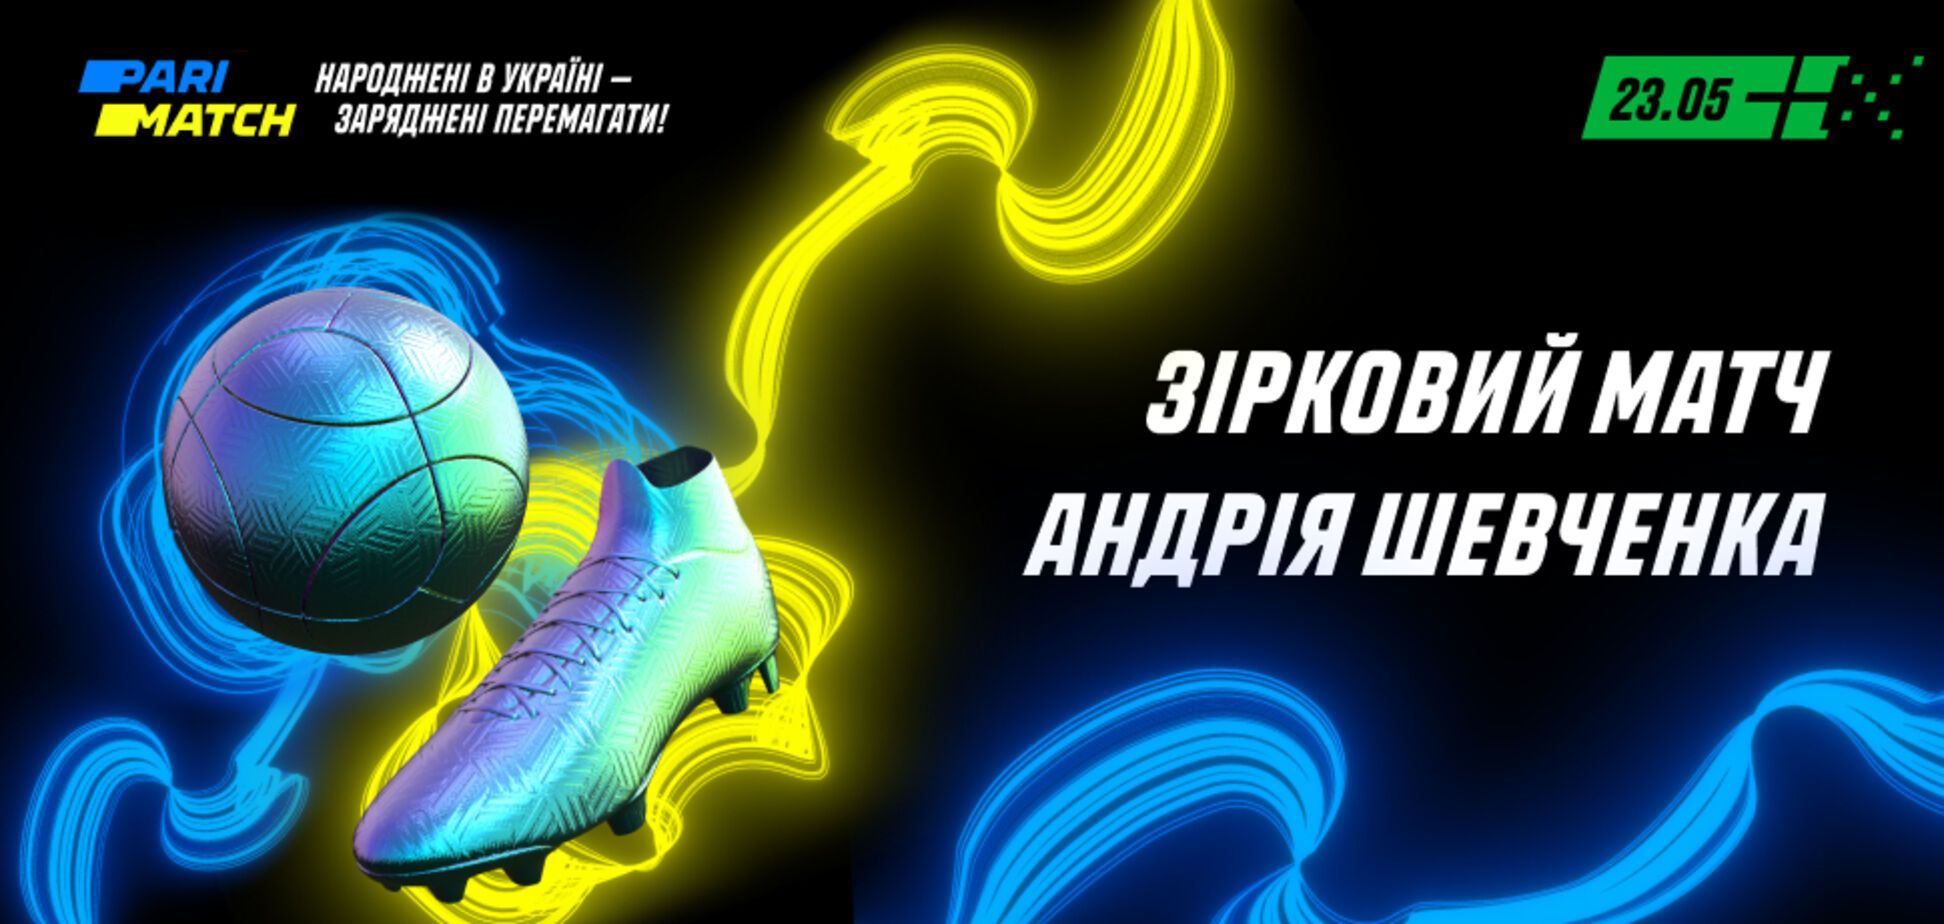 Шевченко, Месси, Самюэль Это'О и другие звезды футбола проведут благотворительный матч, чтобы поддержать украинцев